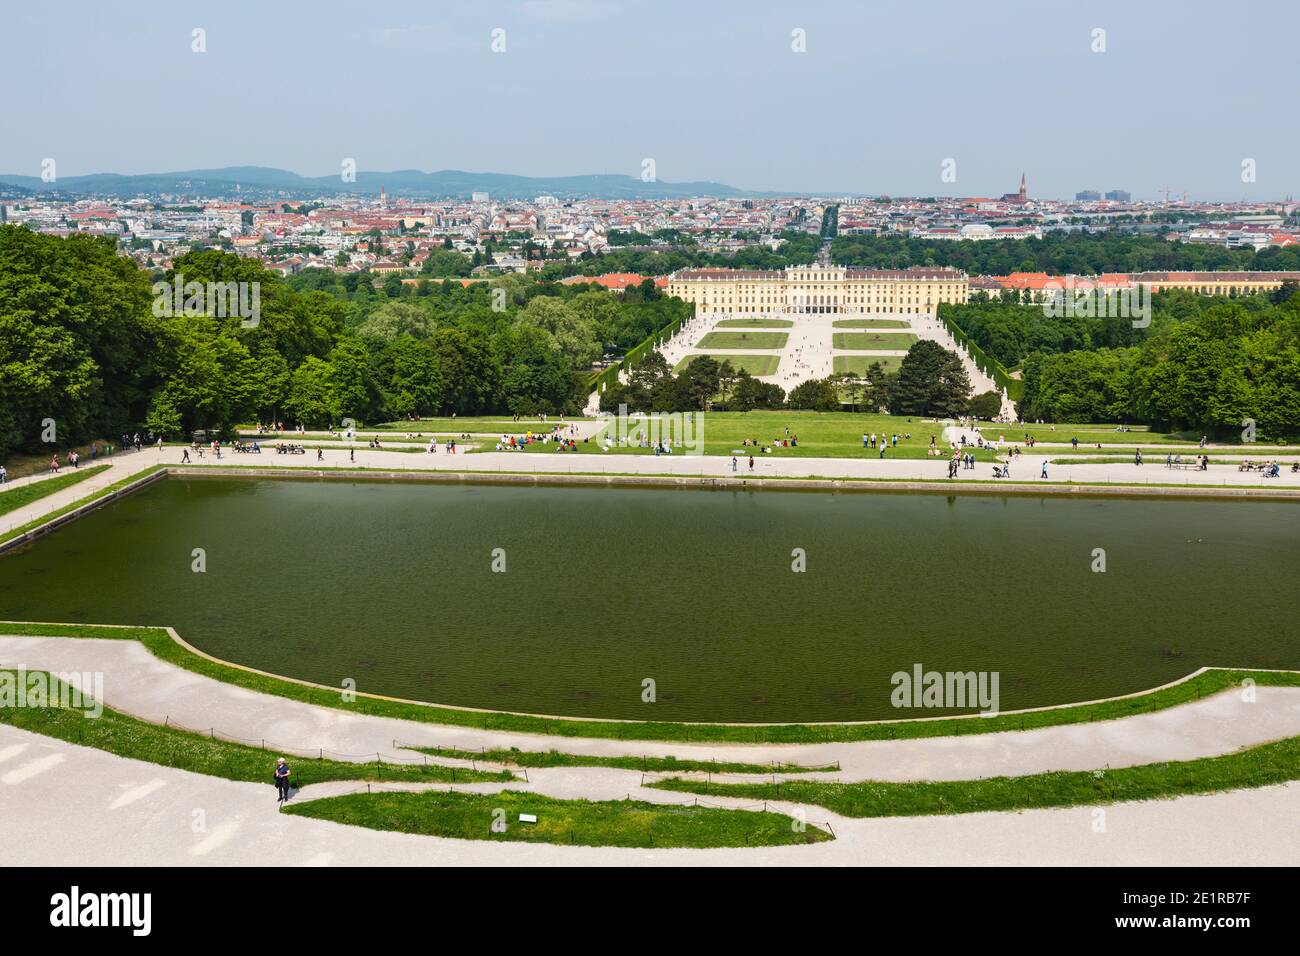 Vista desde gran ángulo sobre el gran parque del Palacio Schoenbrunn en Viena, Austria. Foto de stock